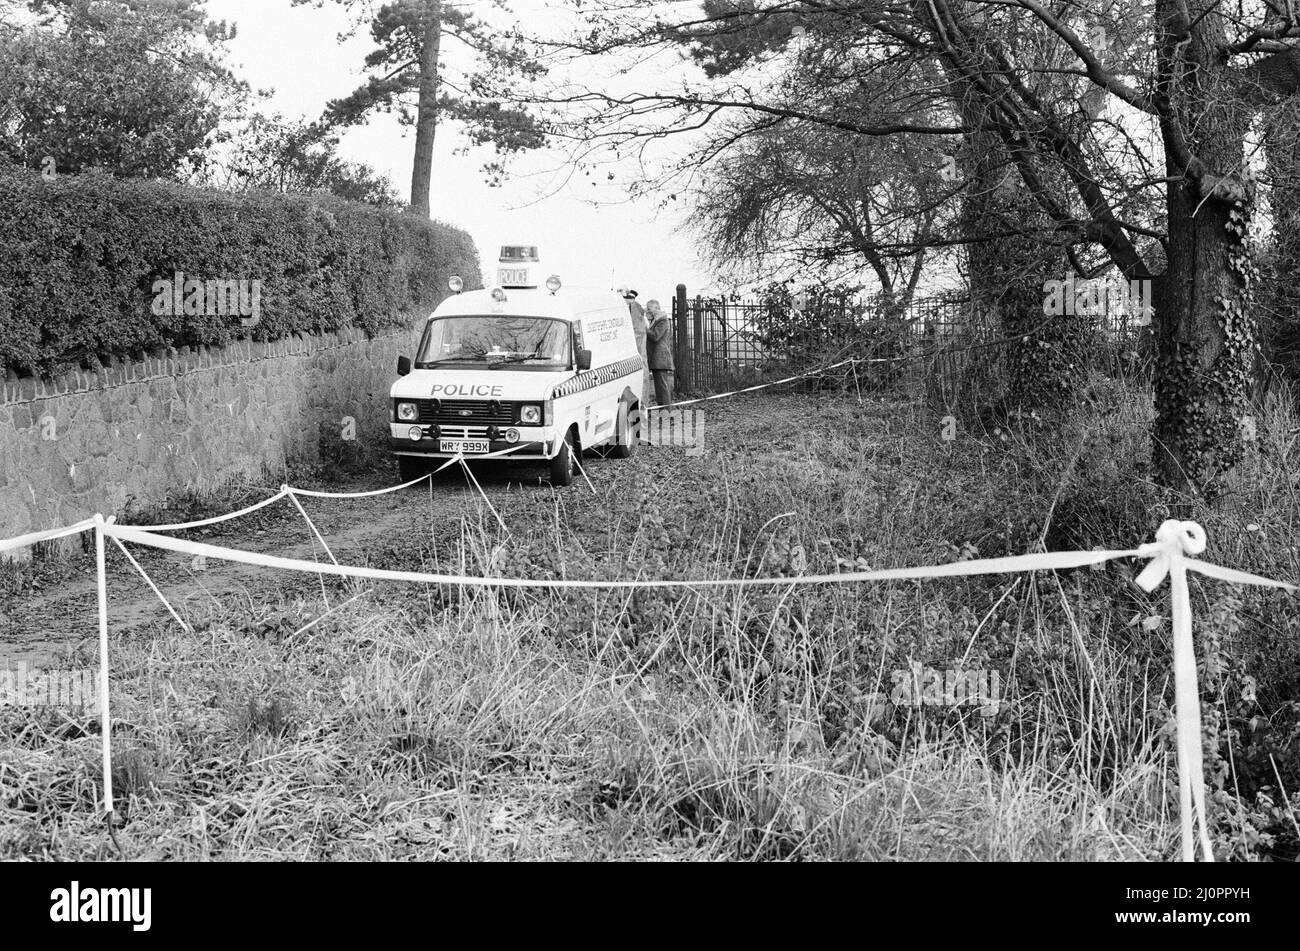 Tatort polizeiliche Untersuchung des Wanderweges, der lokal als Black Pad in Narborough, Leicestershire, bekannt ist, wo das 15-jährige Schulmädchen Lynda Mann vergewaltigt und erwürgt aufgefunden wurde, aufgenommen am Mittwoch, den 23.. November 1983. Colin Pitchfork wurde zu lebenslanger Haft (1988) verurteilt, nachdem er die separaten Morde an Lynda Mann im Alter von 15 (1983) und Dawn Ashworth im Alter von 15 (1986) zugegeben hatte. Er war der erste, der aufgrund von DNA-Fingerabdrücken wegen Mordes verurteilt wurde und der erste, der infolge eines DNA-Massenscreenings gefangen wurde. Stockfoto